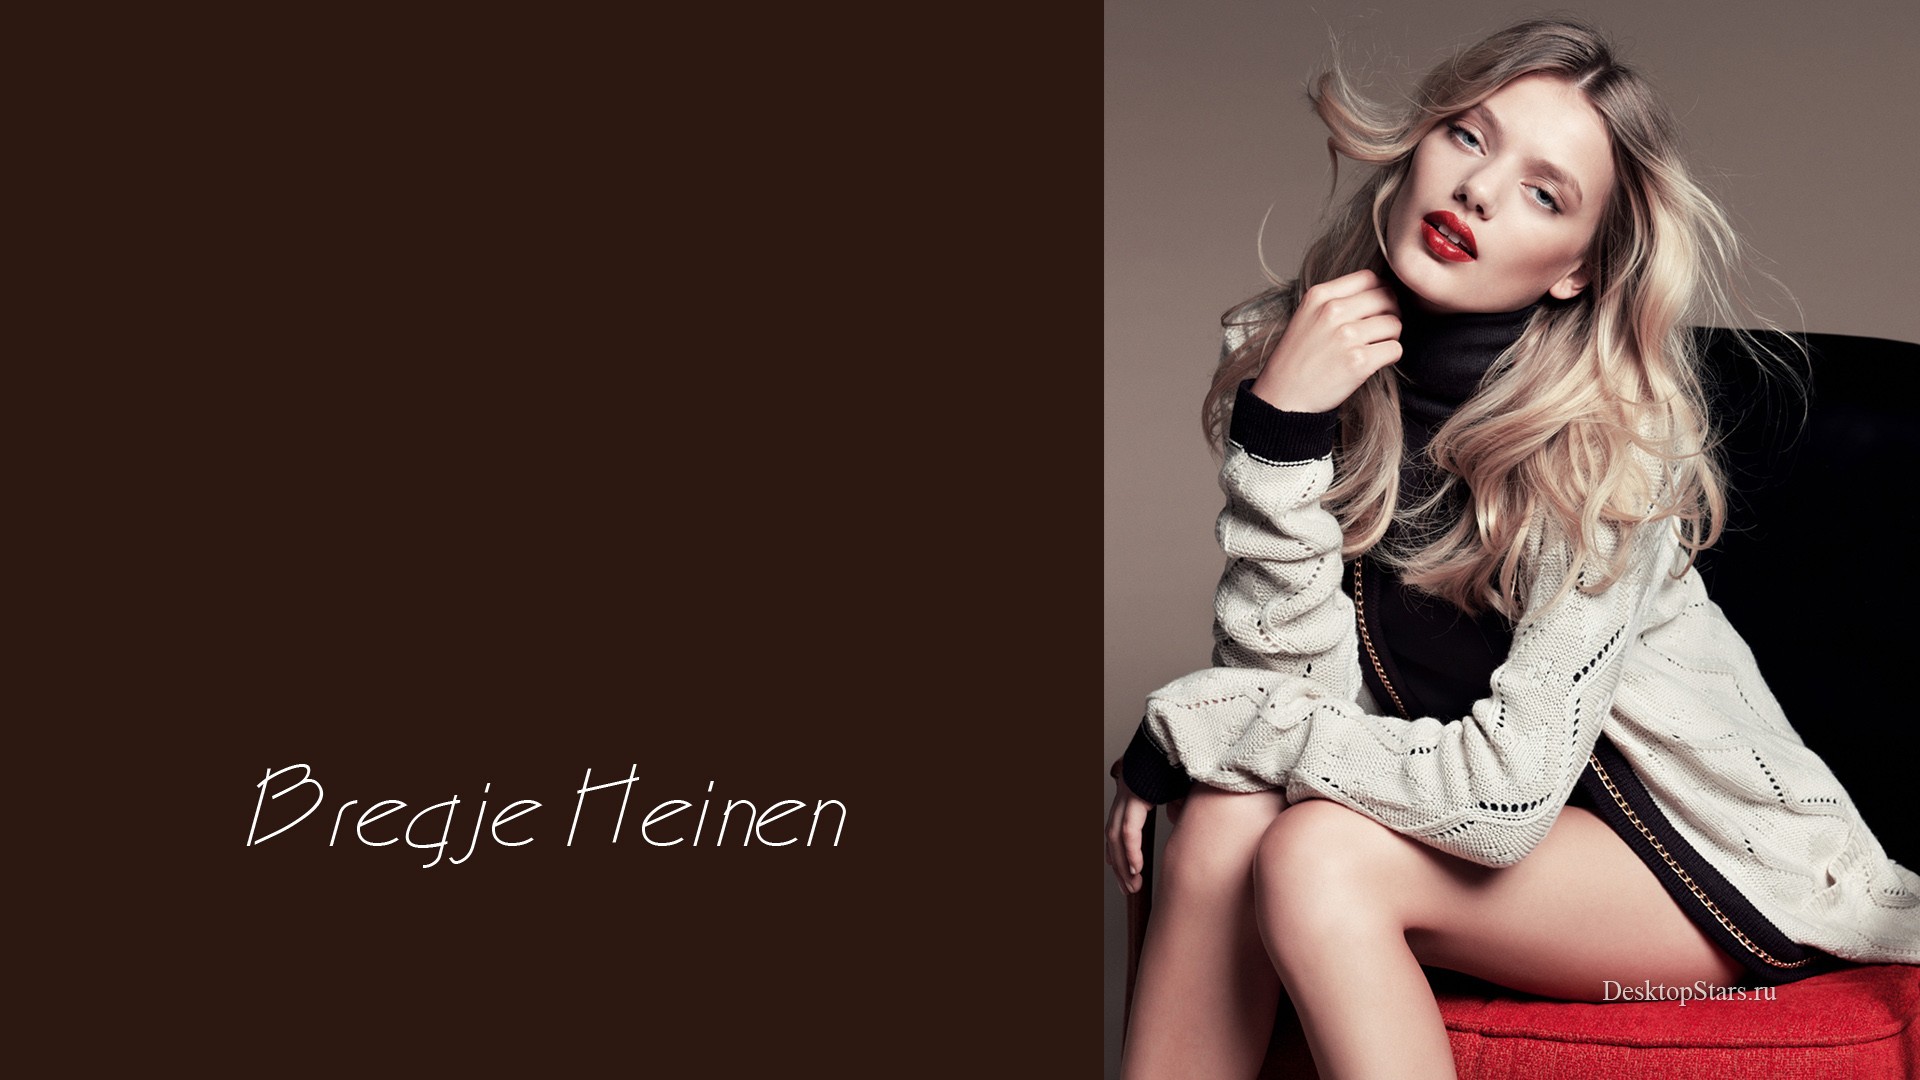 Bregje Heinen Sweater Legs Women Model Red Lipstick Blonde 1920x1080